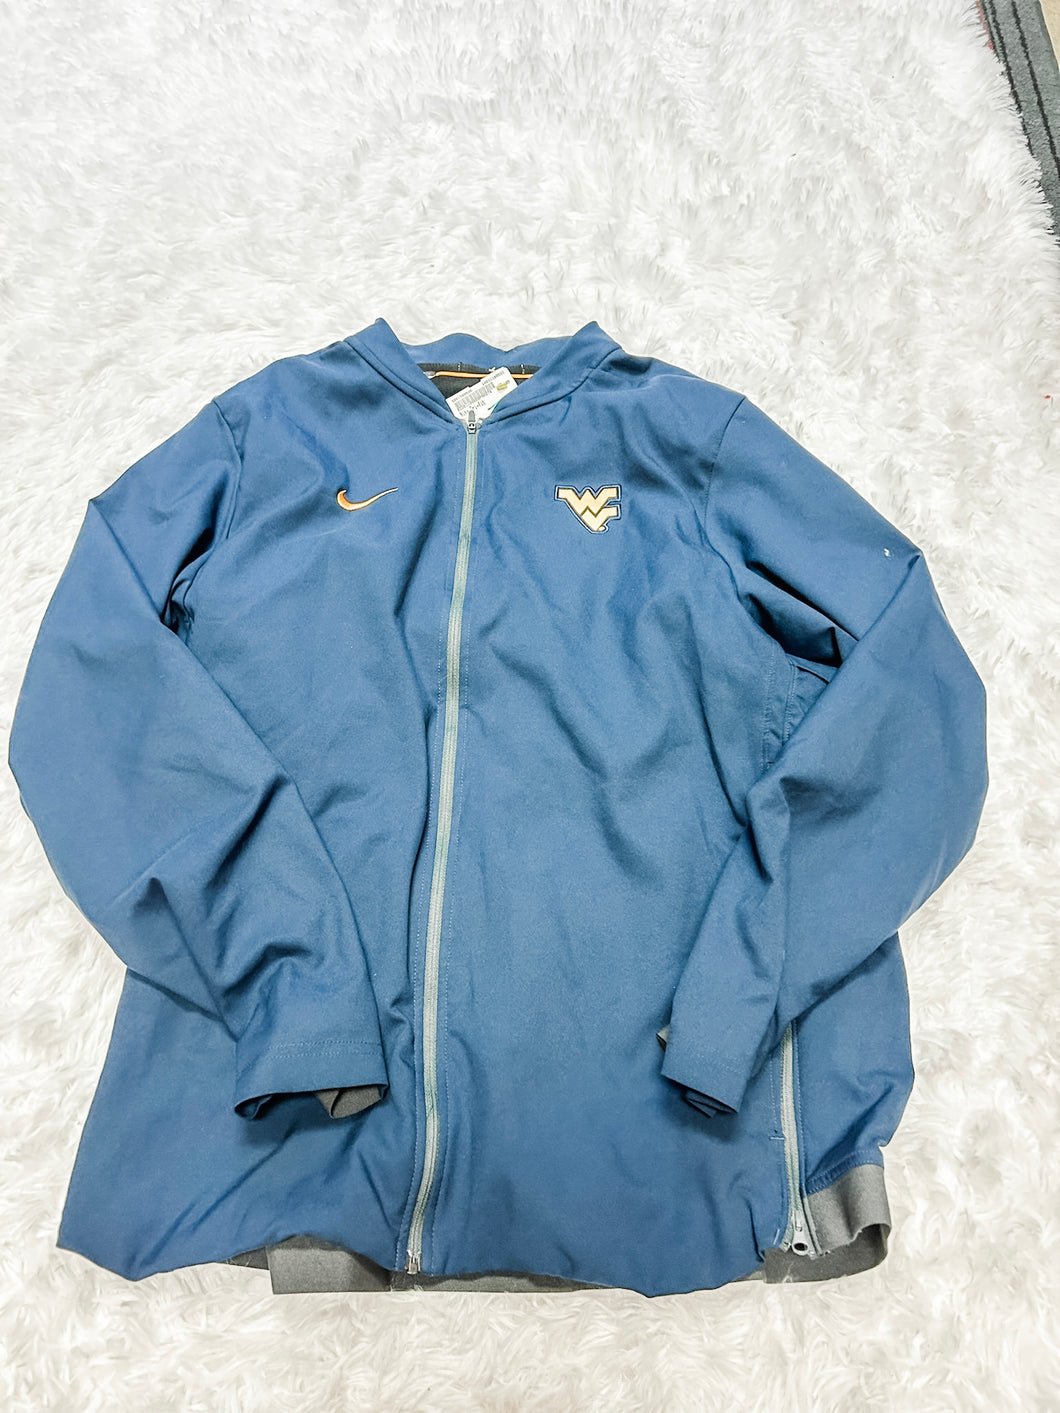 Nike Dri Fit Athletic Jacket Size Large M0378